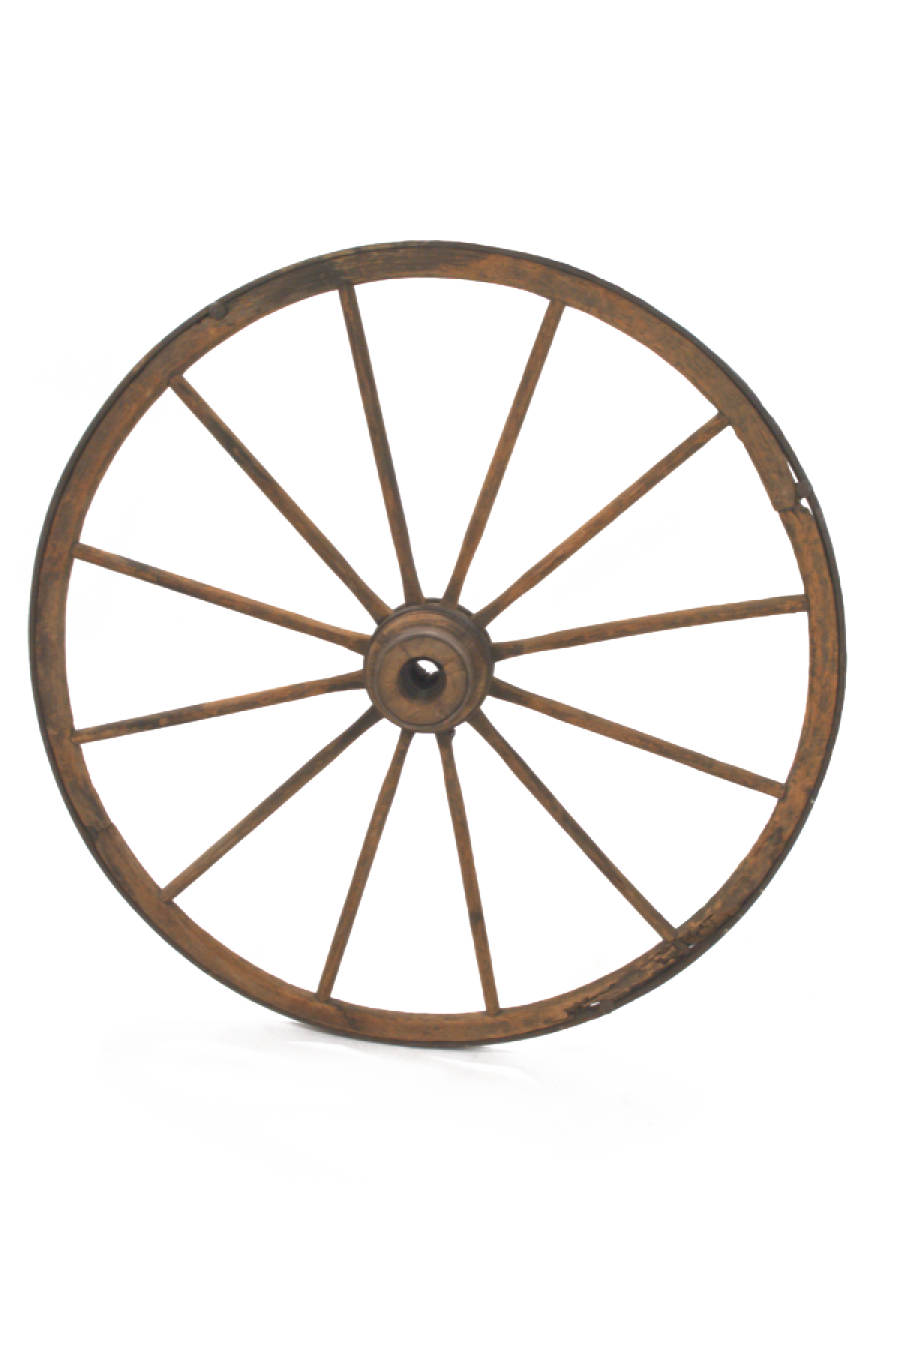 Imagem de download de roda de roda de vagão